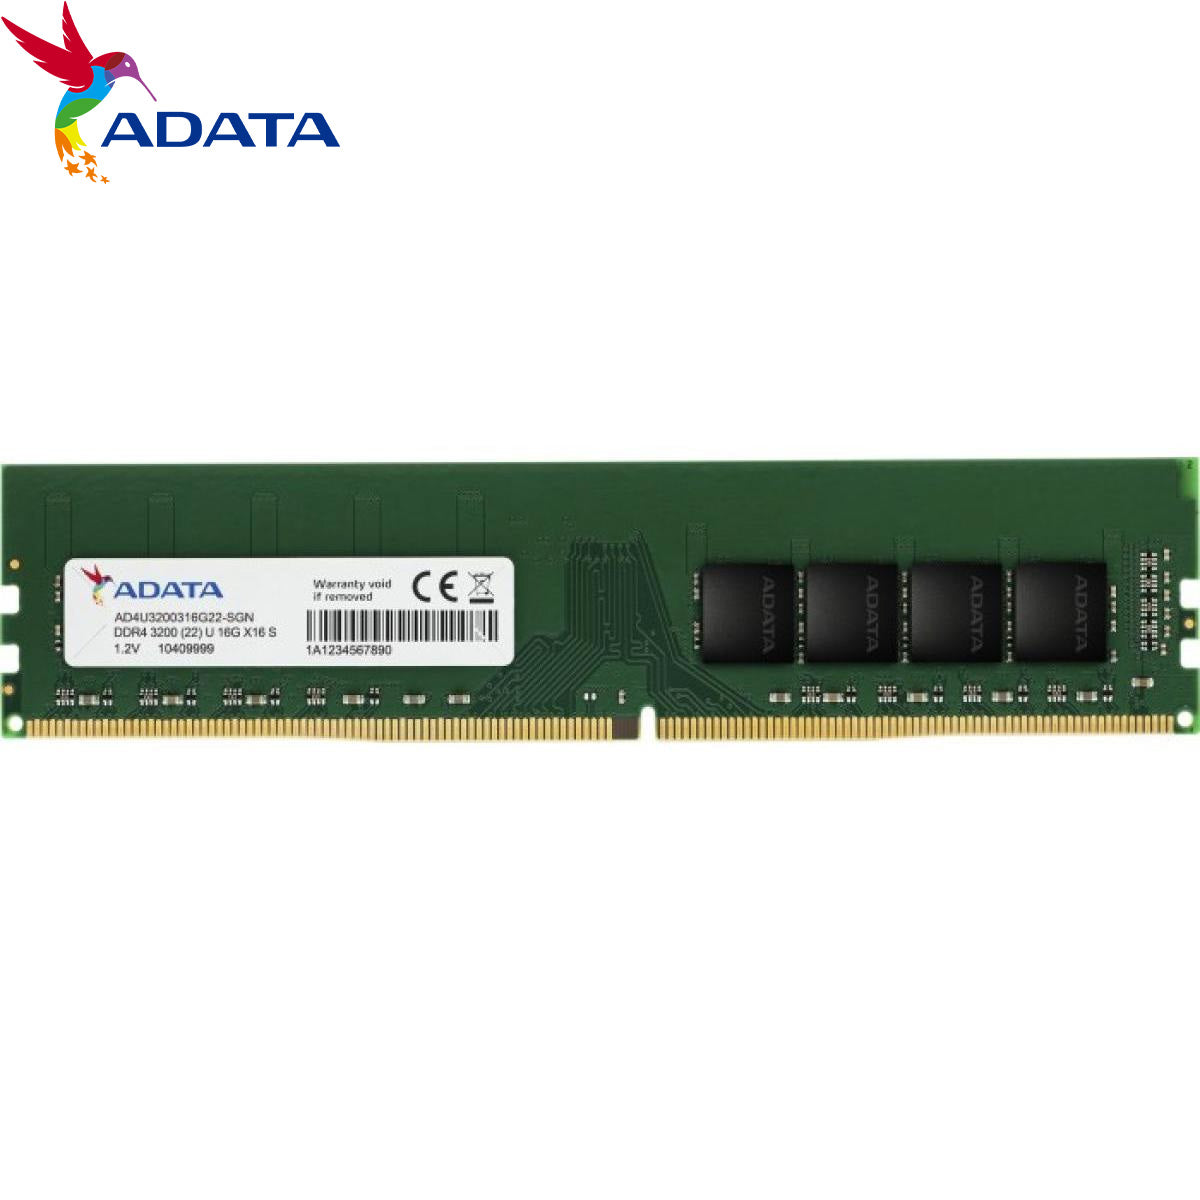 ADATA DDR4 16G 3200HZ ECC-DIMM, ( AD4E3200316G22-BSSC )